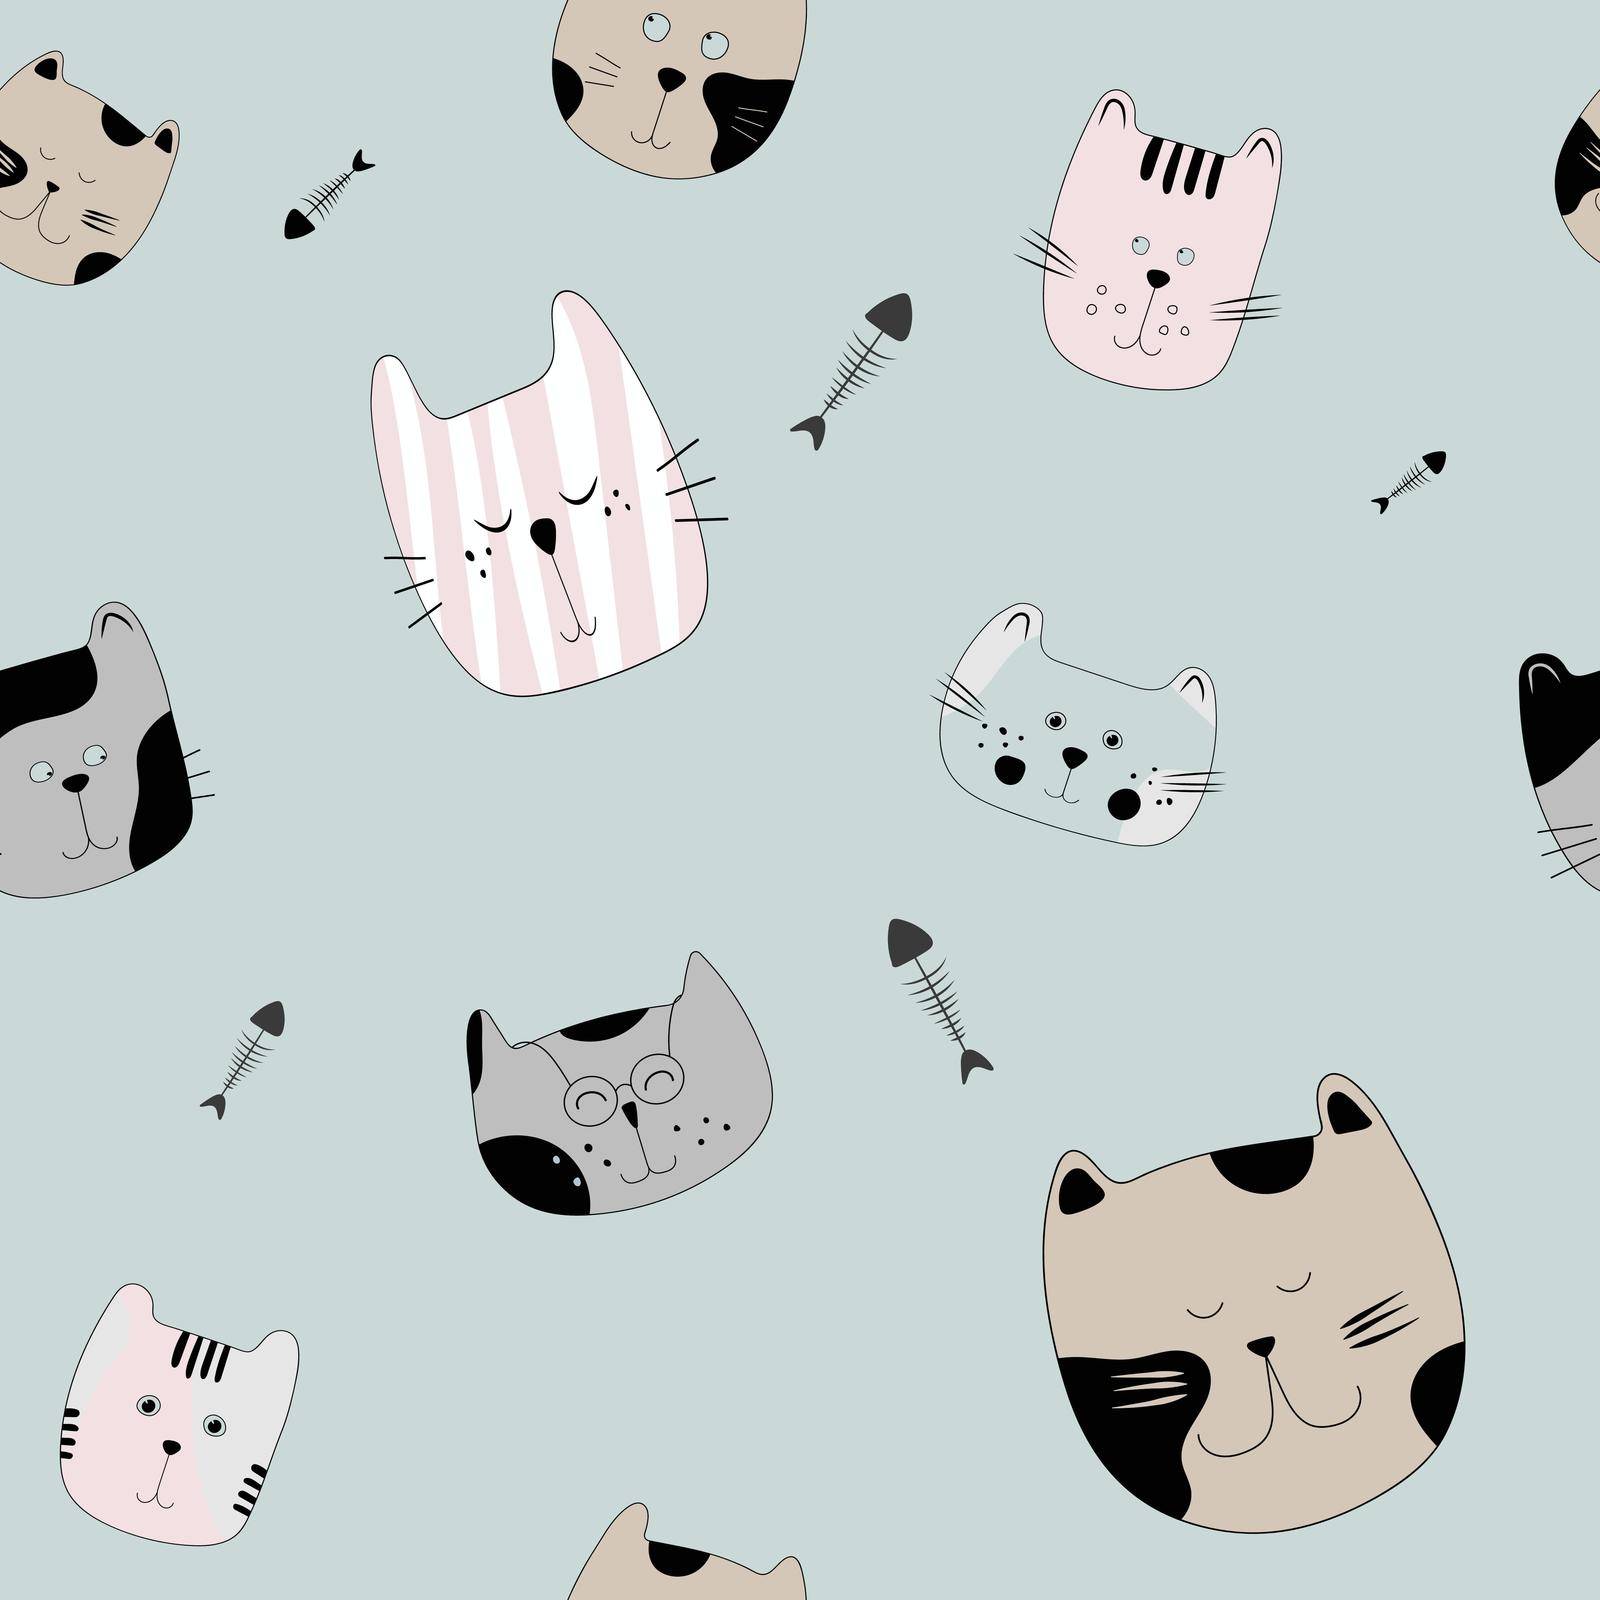 Kitty cat pattern by tan4ikk1